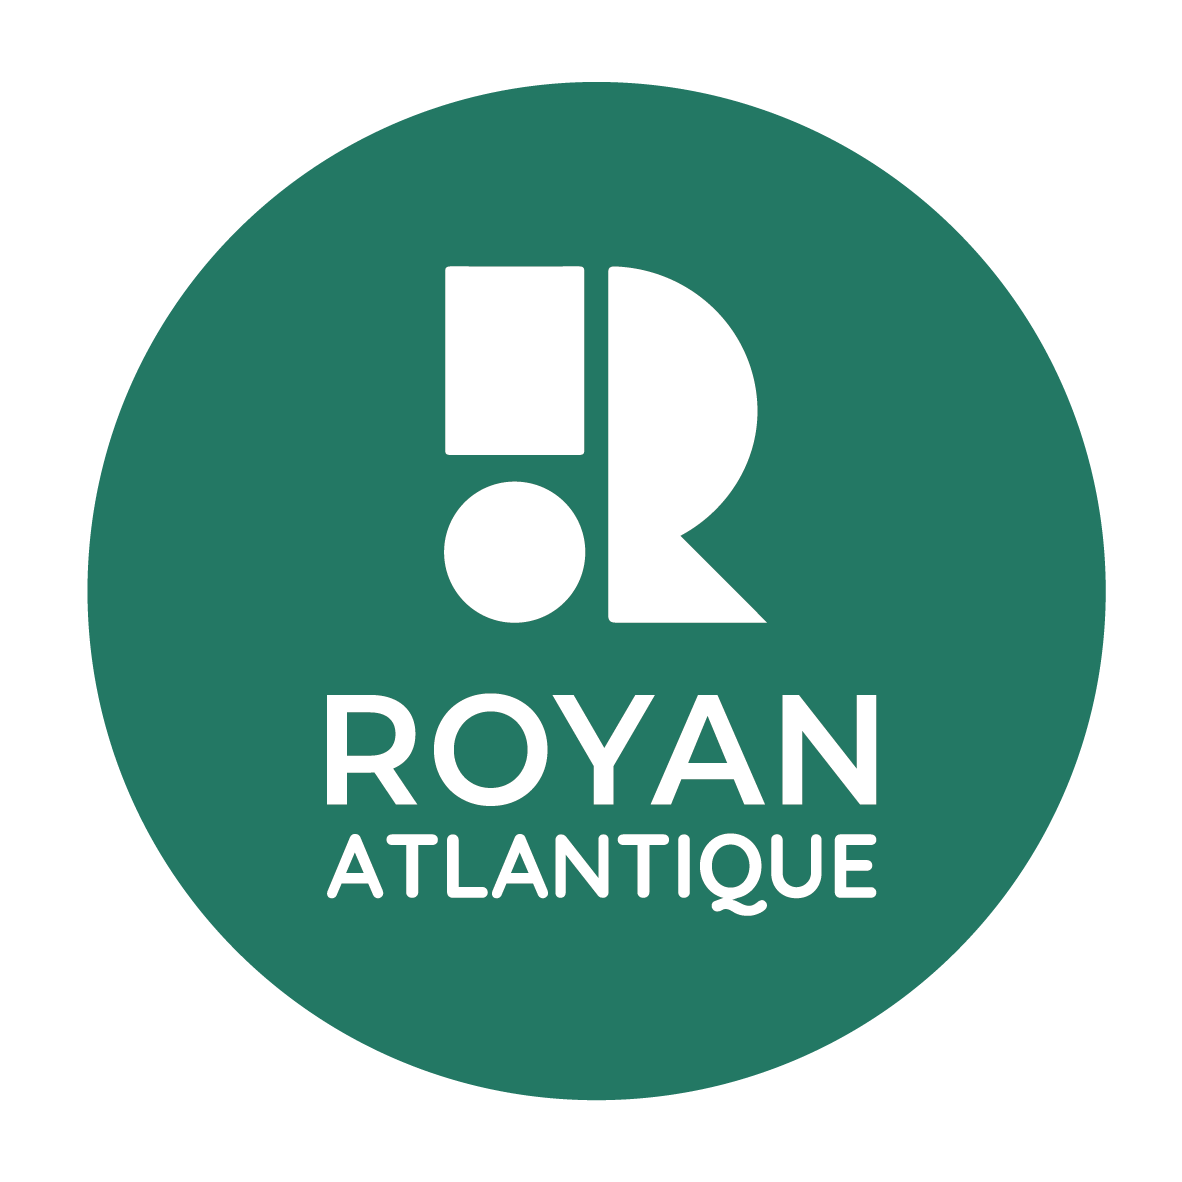 Royan Atlantique   estampille cartouche rond vert pin